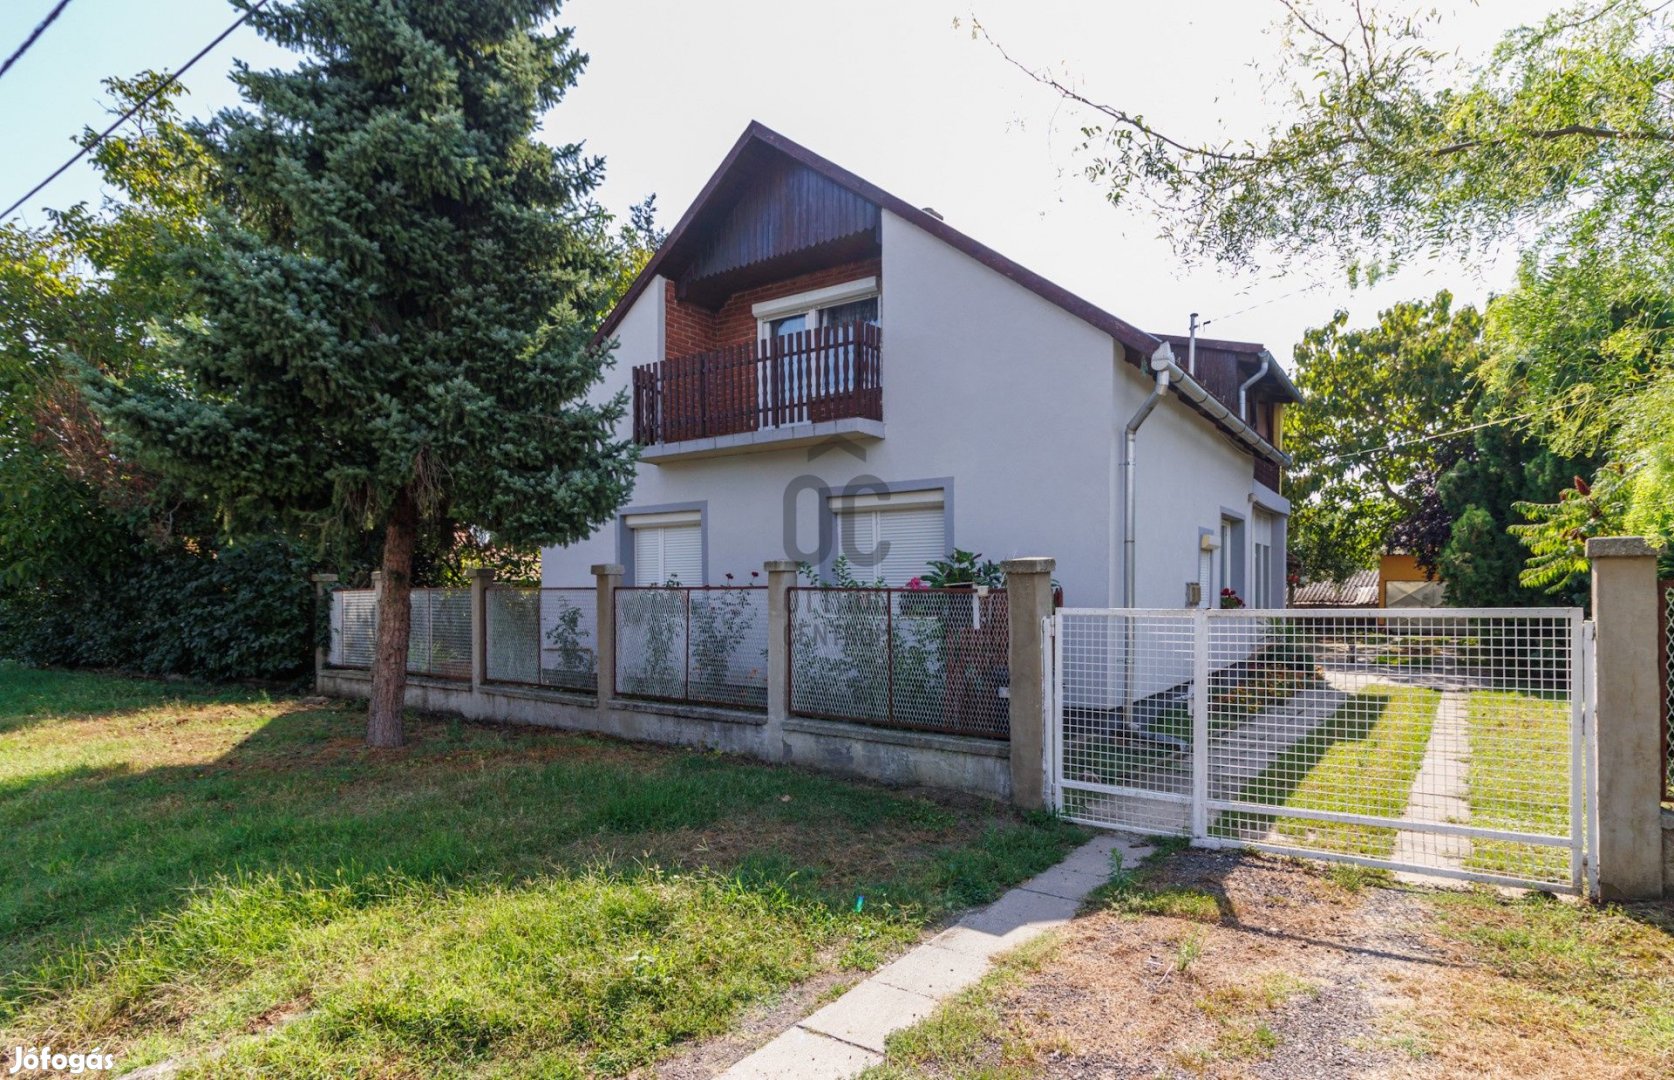 Balatonhoz közel nyugodt környéken családi ház eladó!